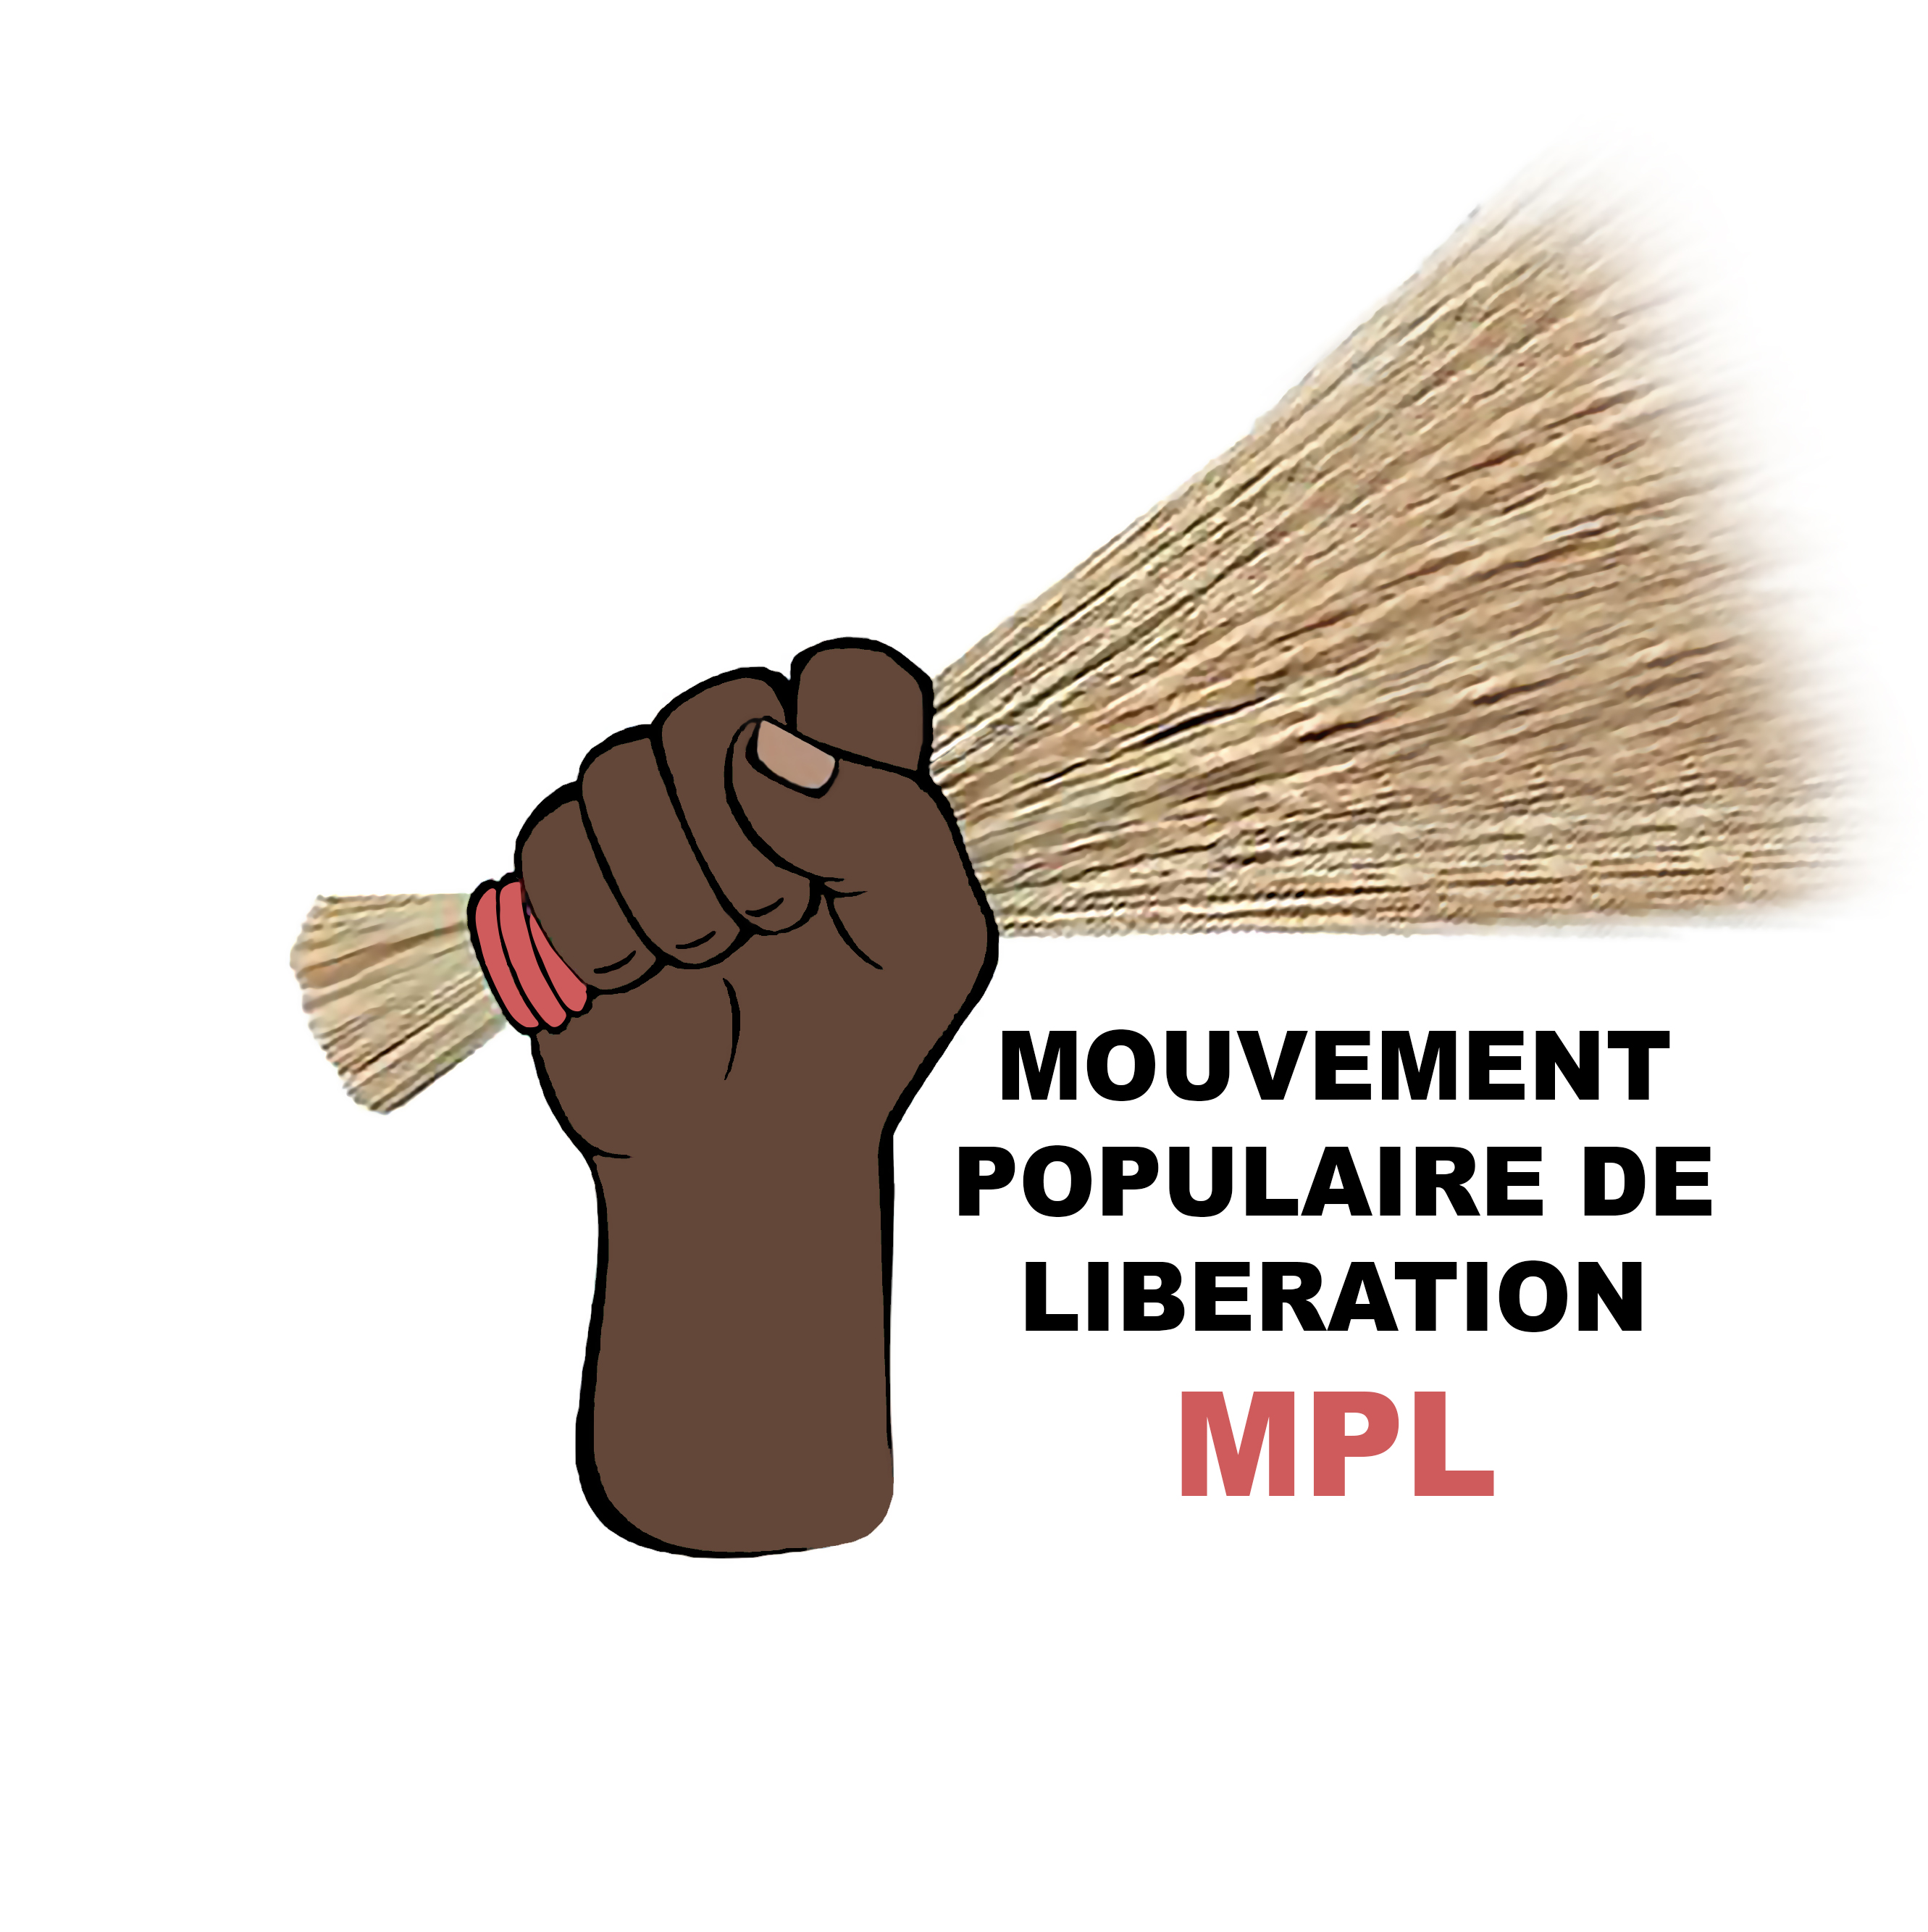 communiqué du parti MPL sur l'incendie mortel de Sèmè-Podji